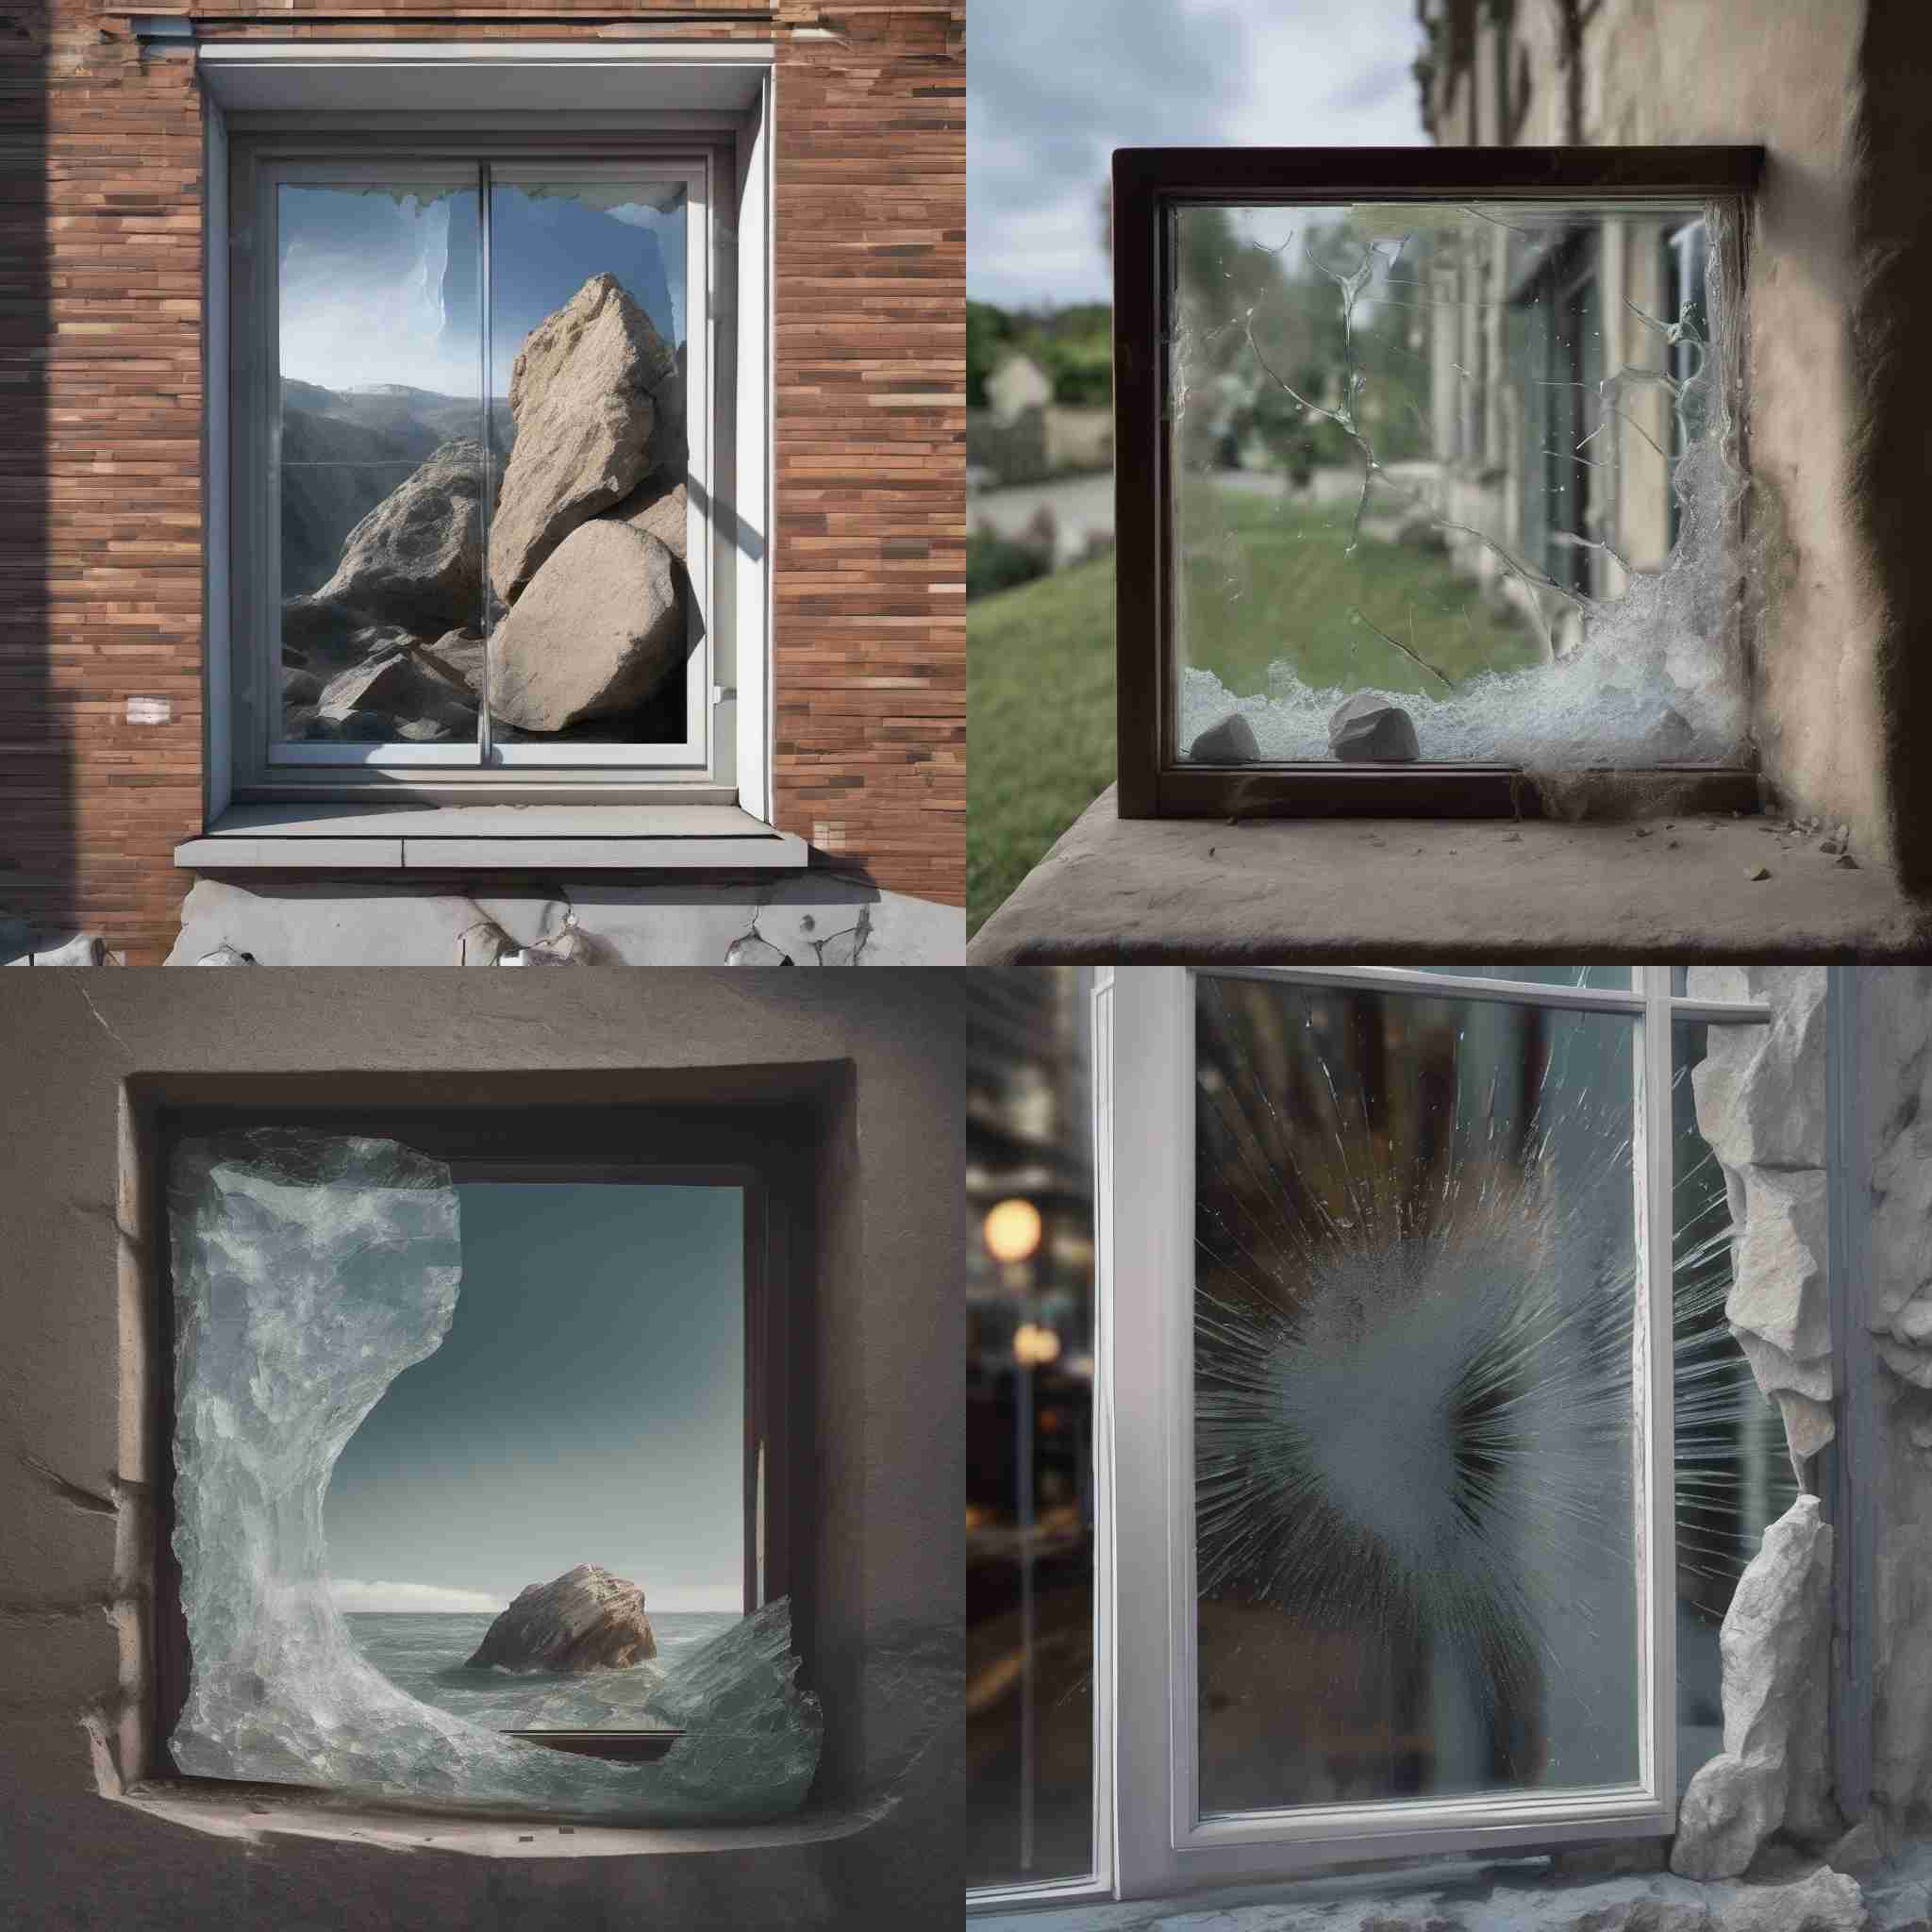 A glass window hit by a rock